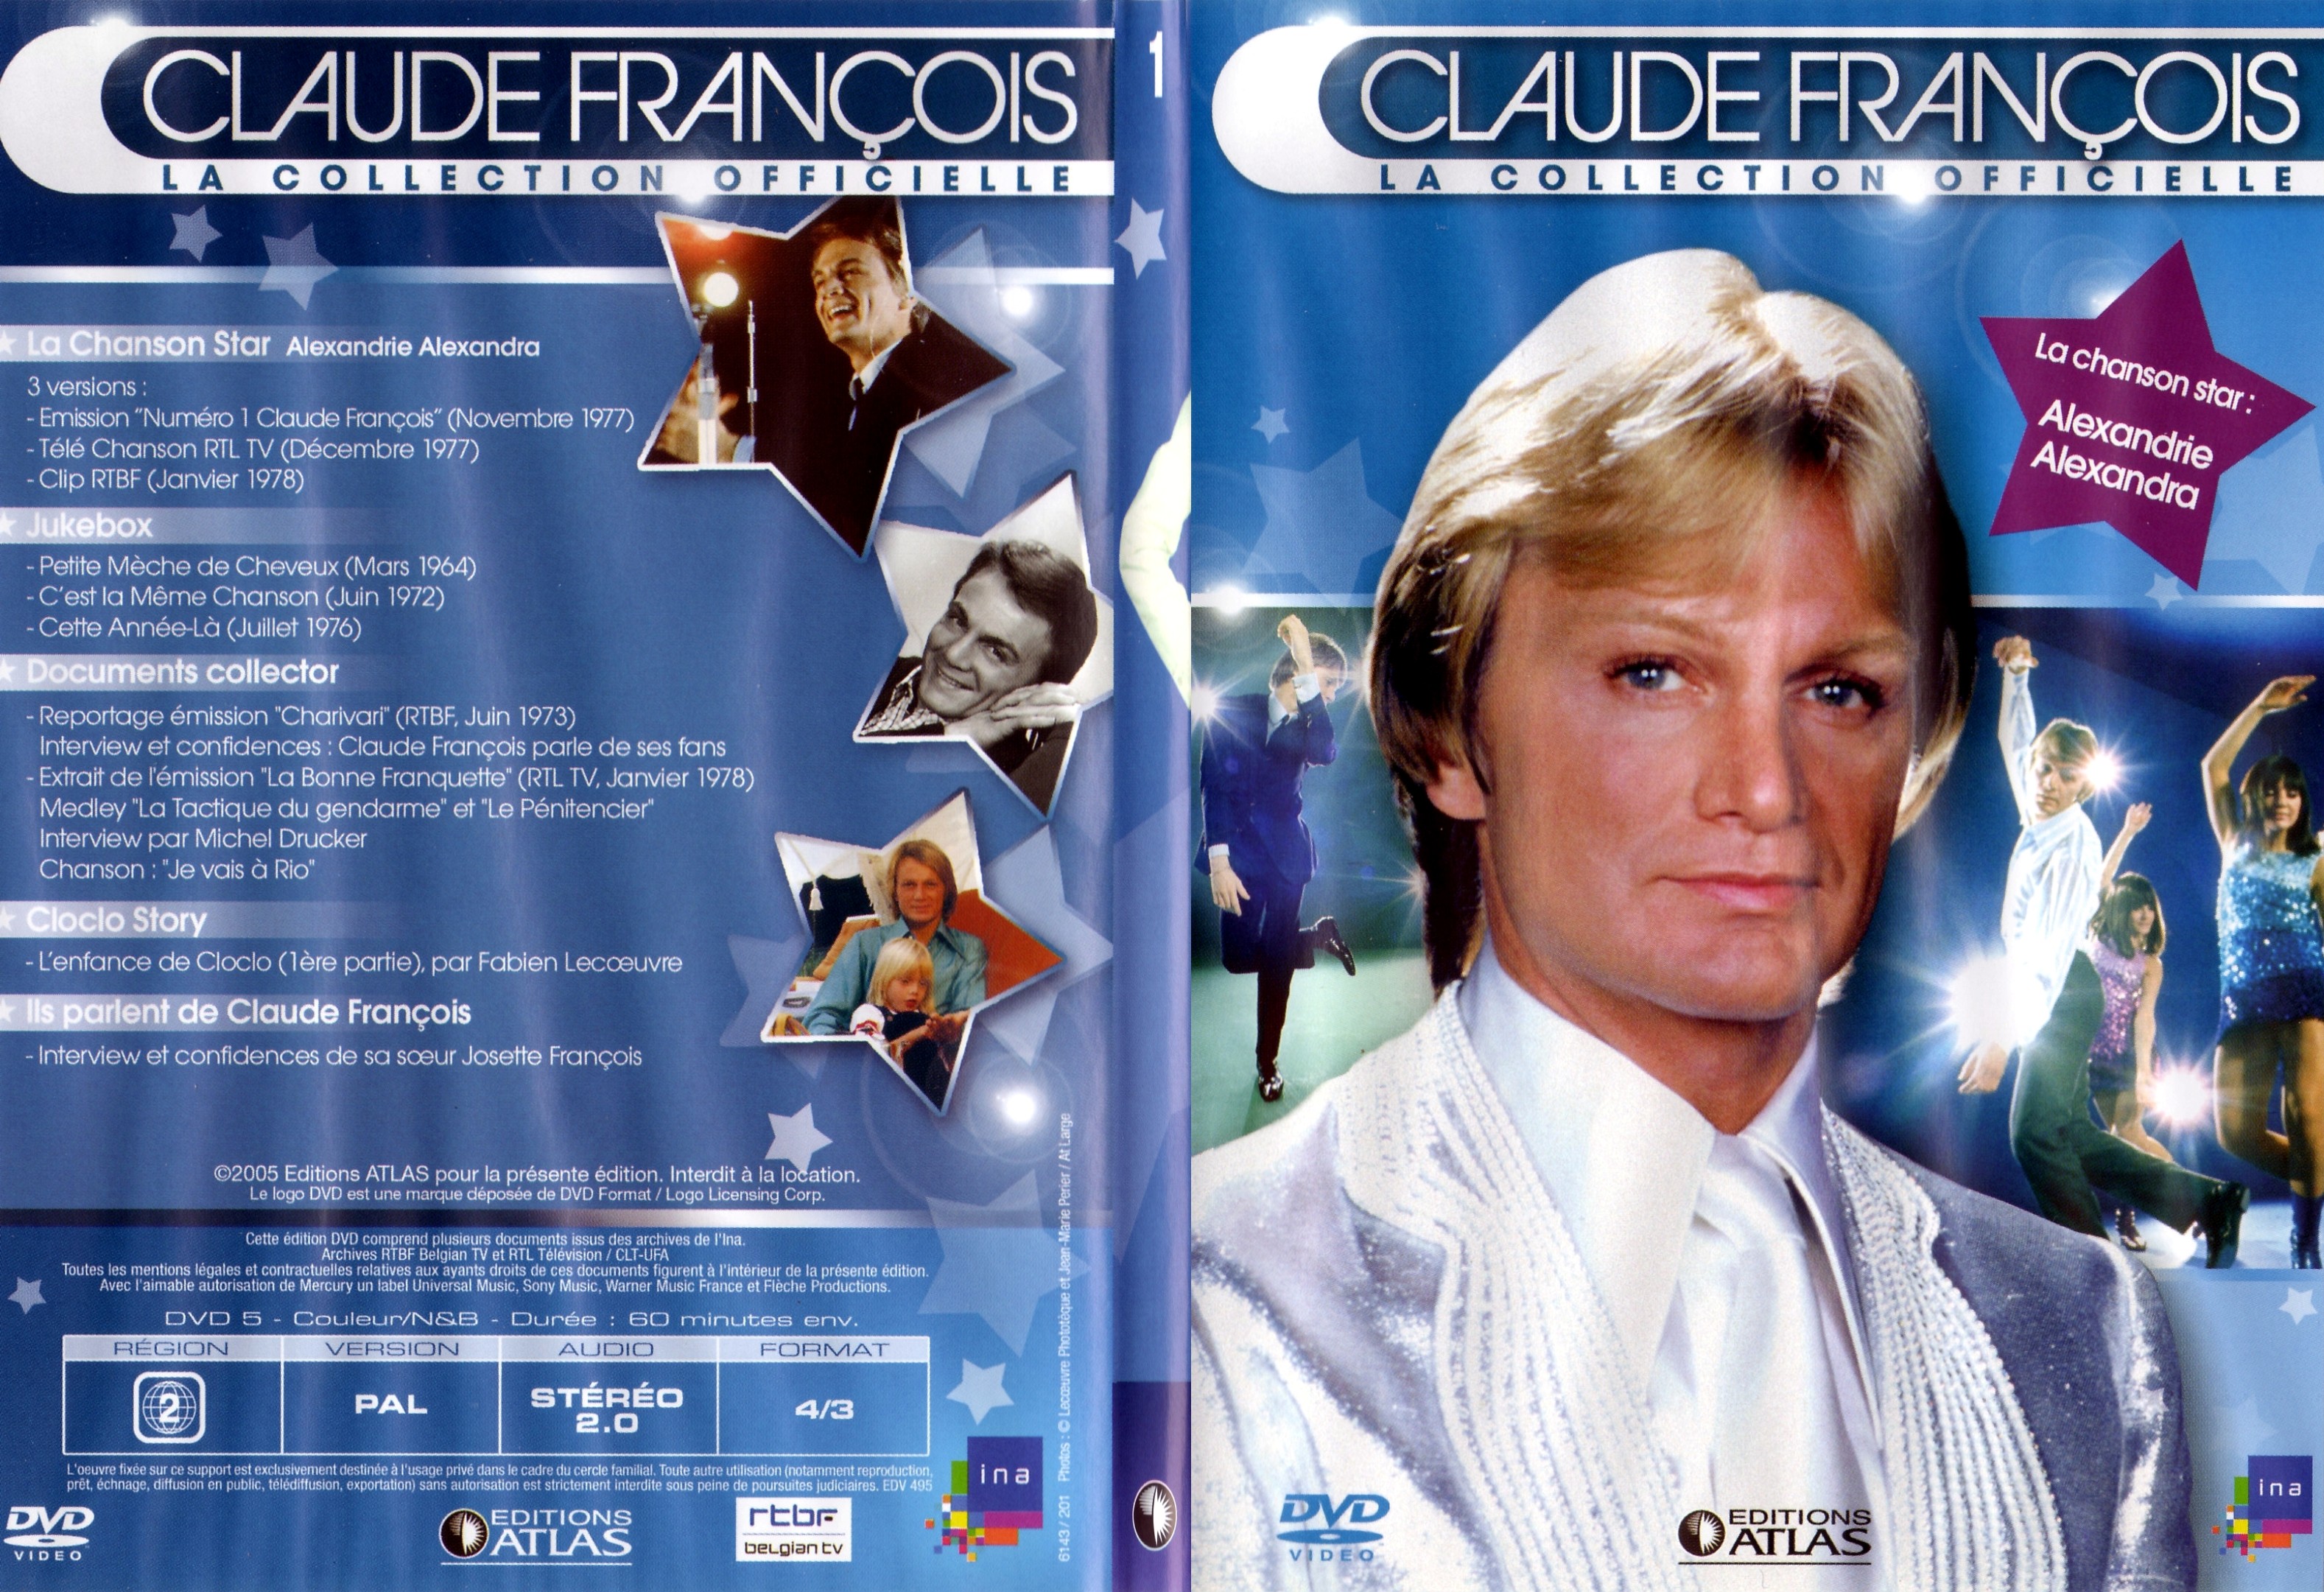 Jaquette DVD Claude francois le collection officielle vol 01 - SLIM